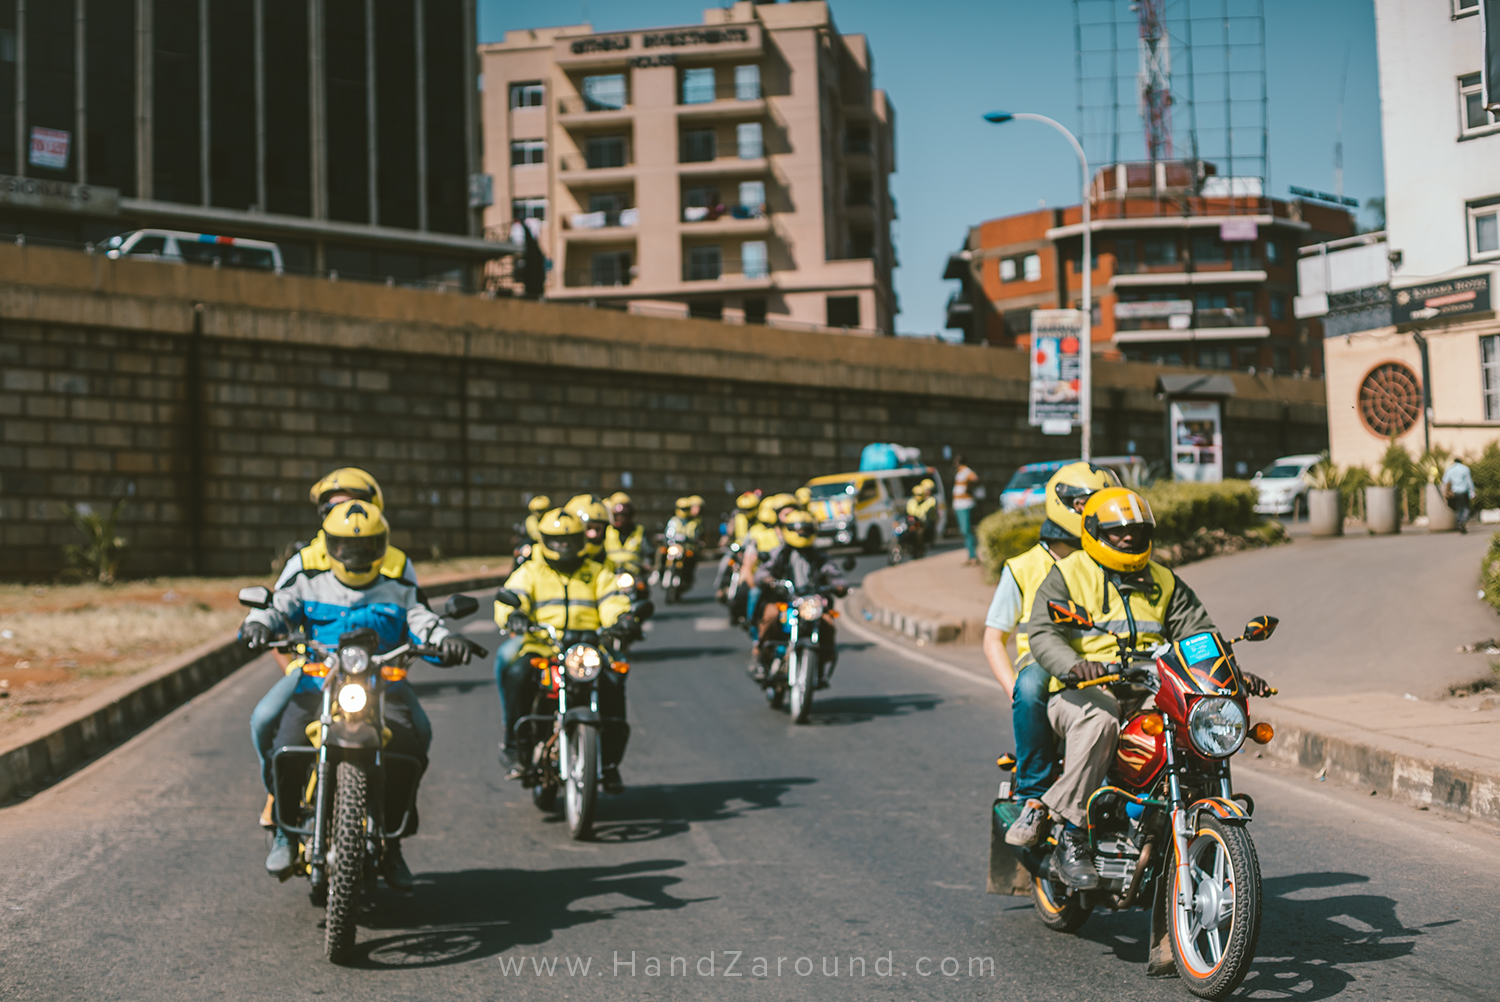 017_HandZaround_Nairobi_City_Video_Guide_What_to_Do_In_Nairobi.jpg